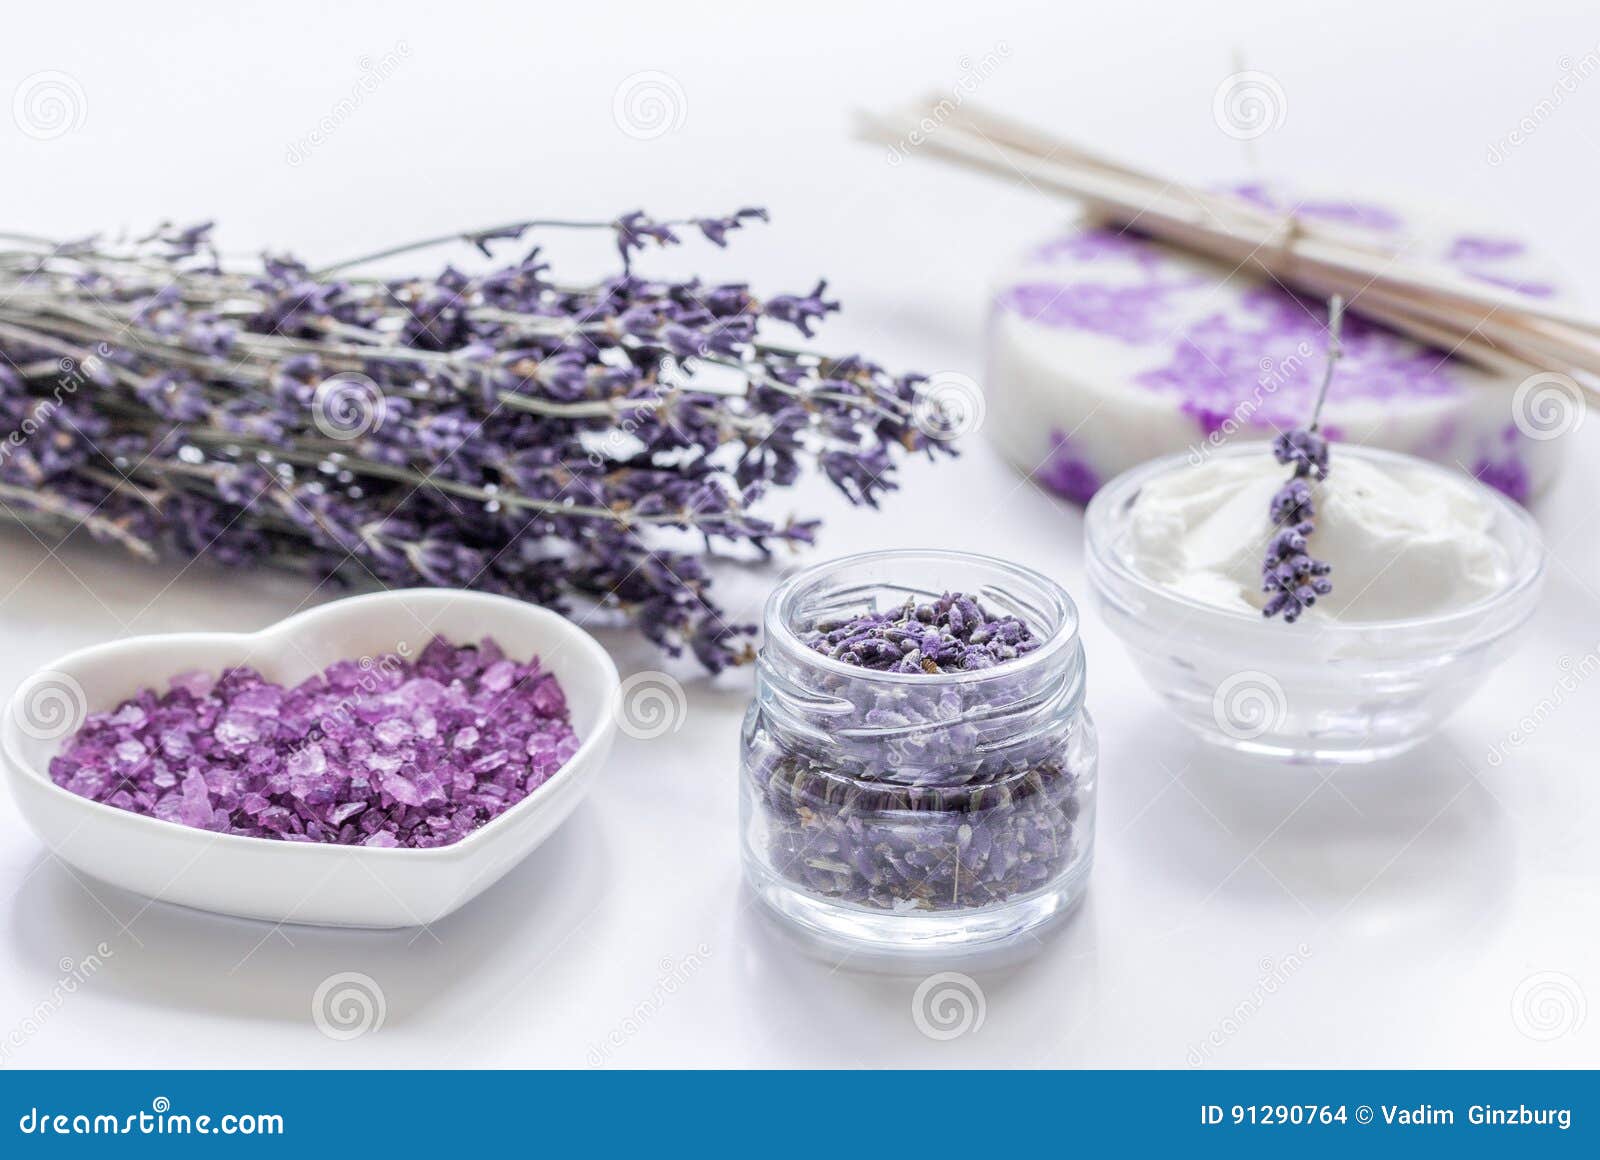 Органическая косметика Lavender